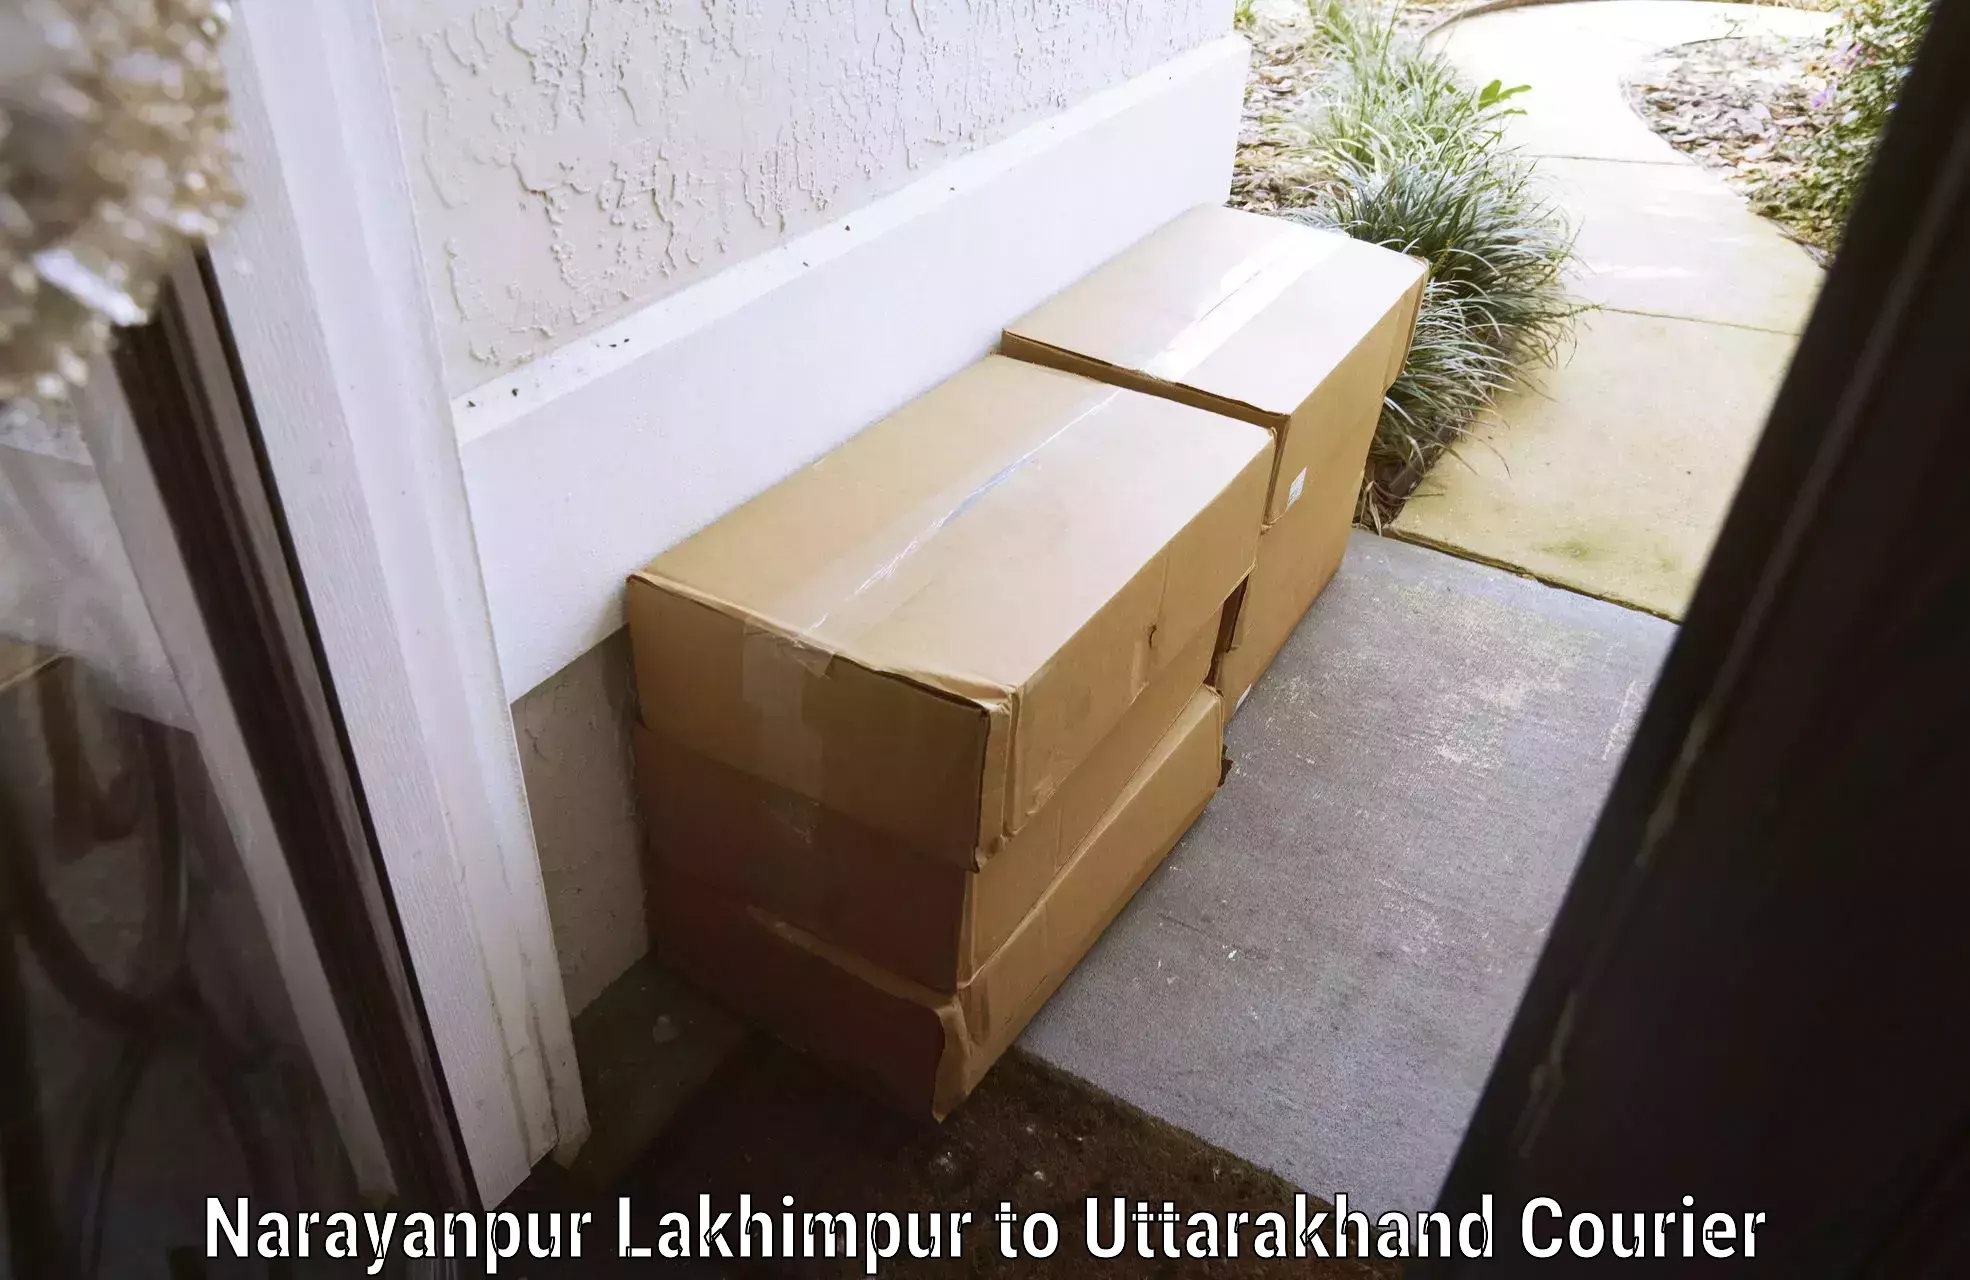 Luggage delivery estimate Narayanpur Lakhimpur to Uttarkashi